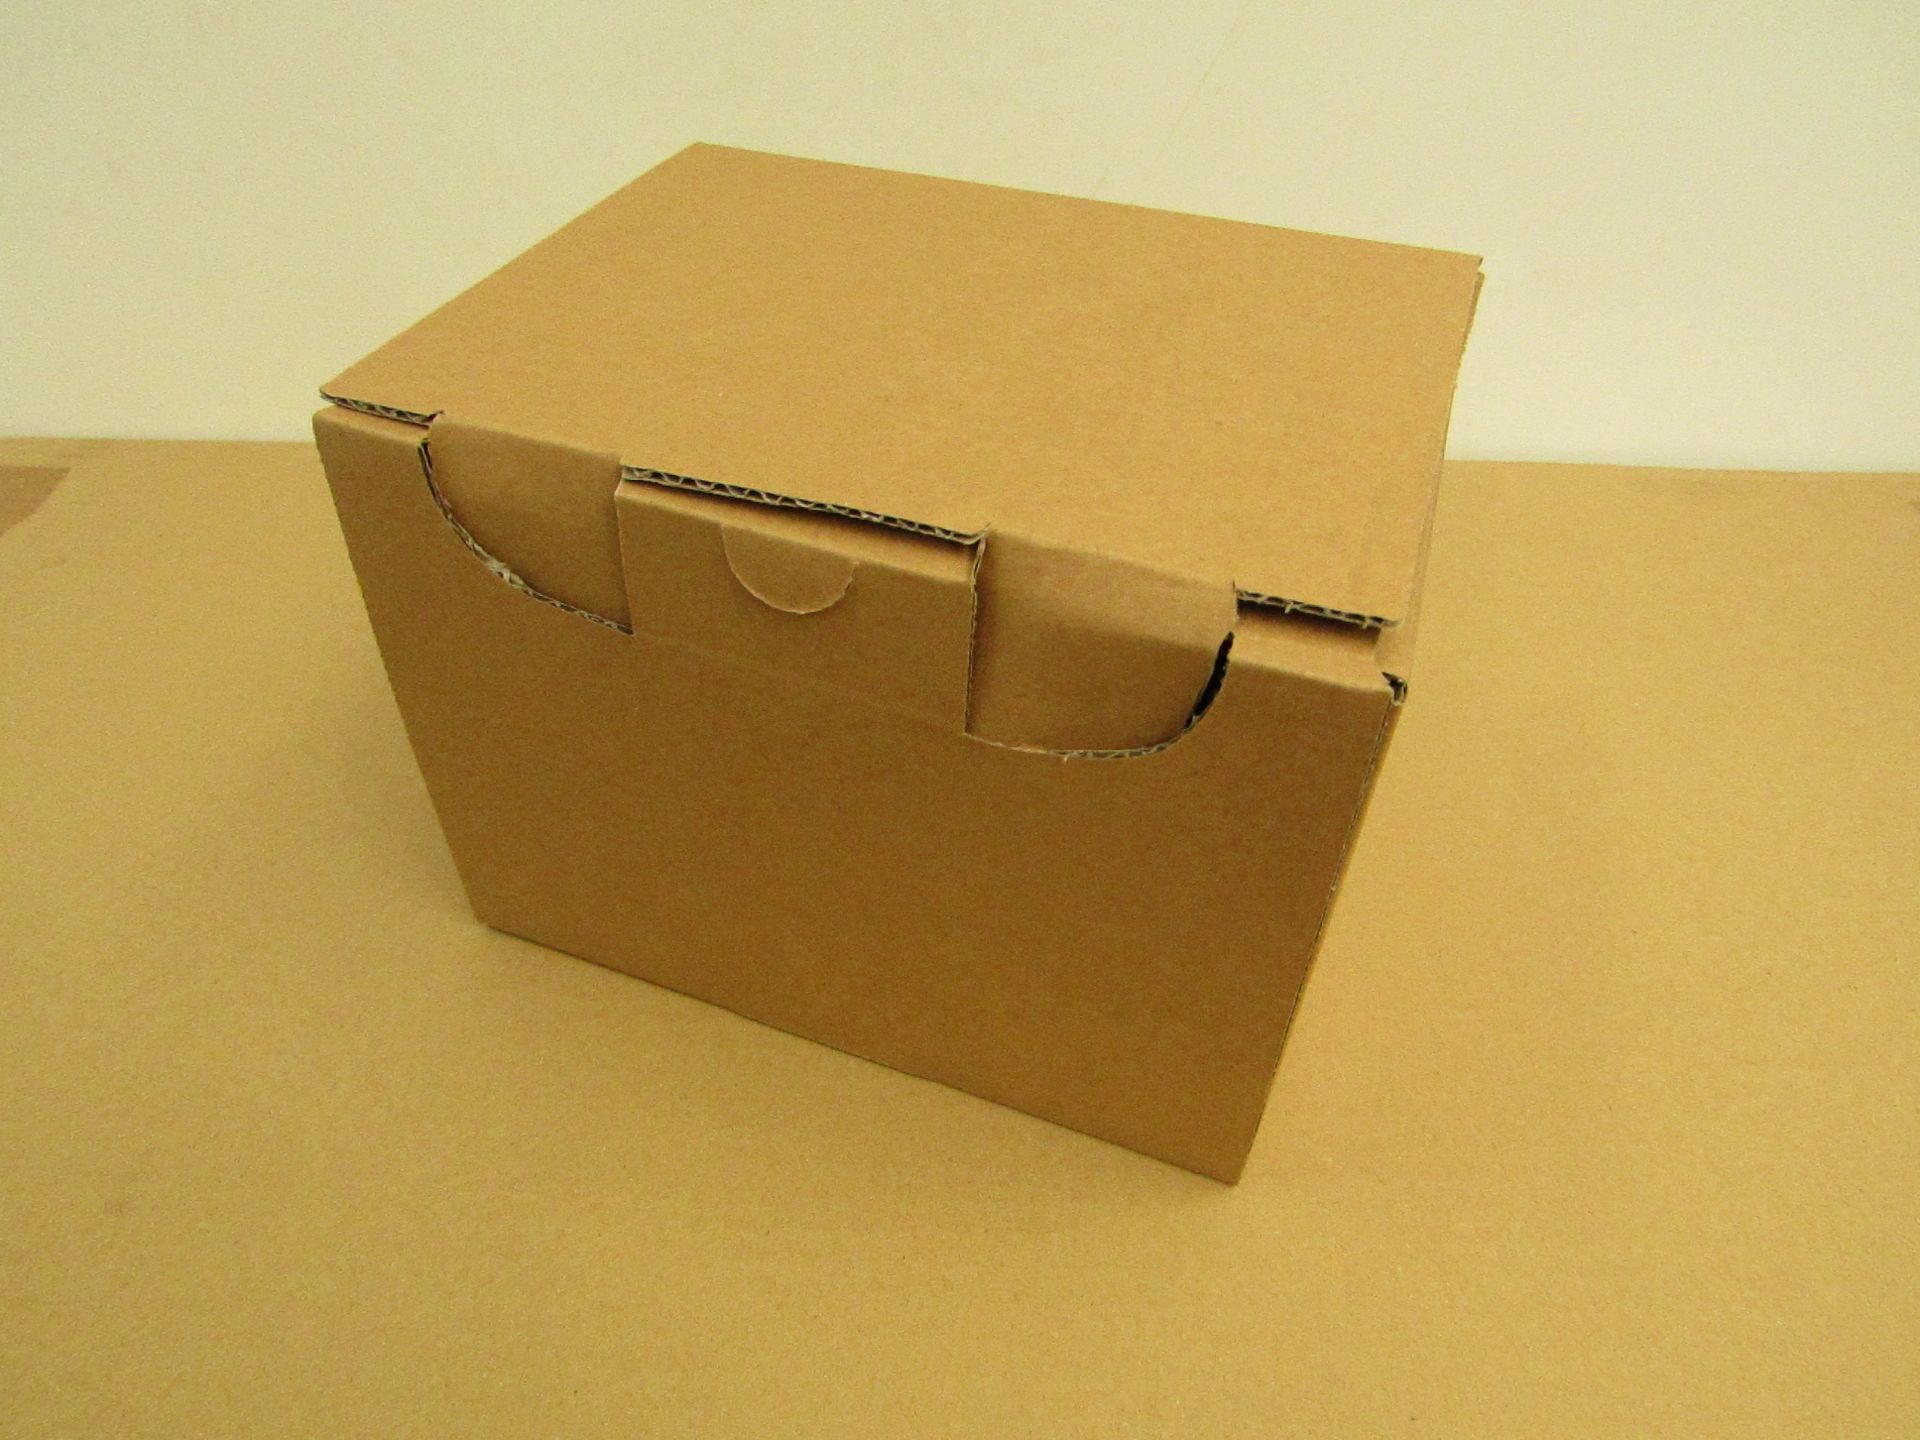 25x die cut parcel boxes (250mm x 150mm x 150mm)